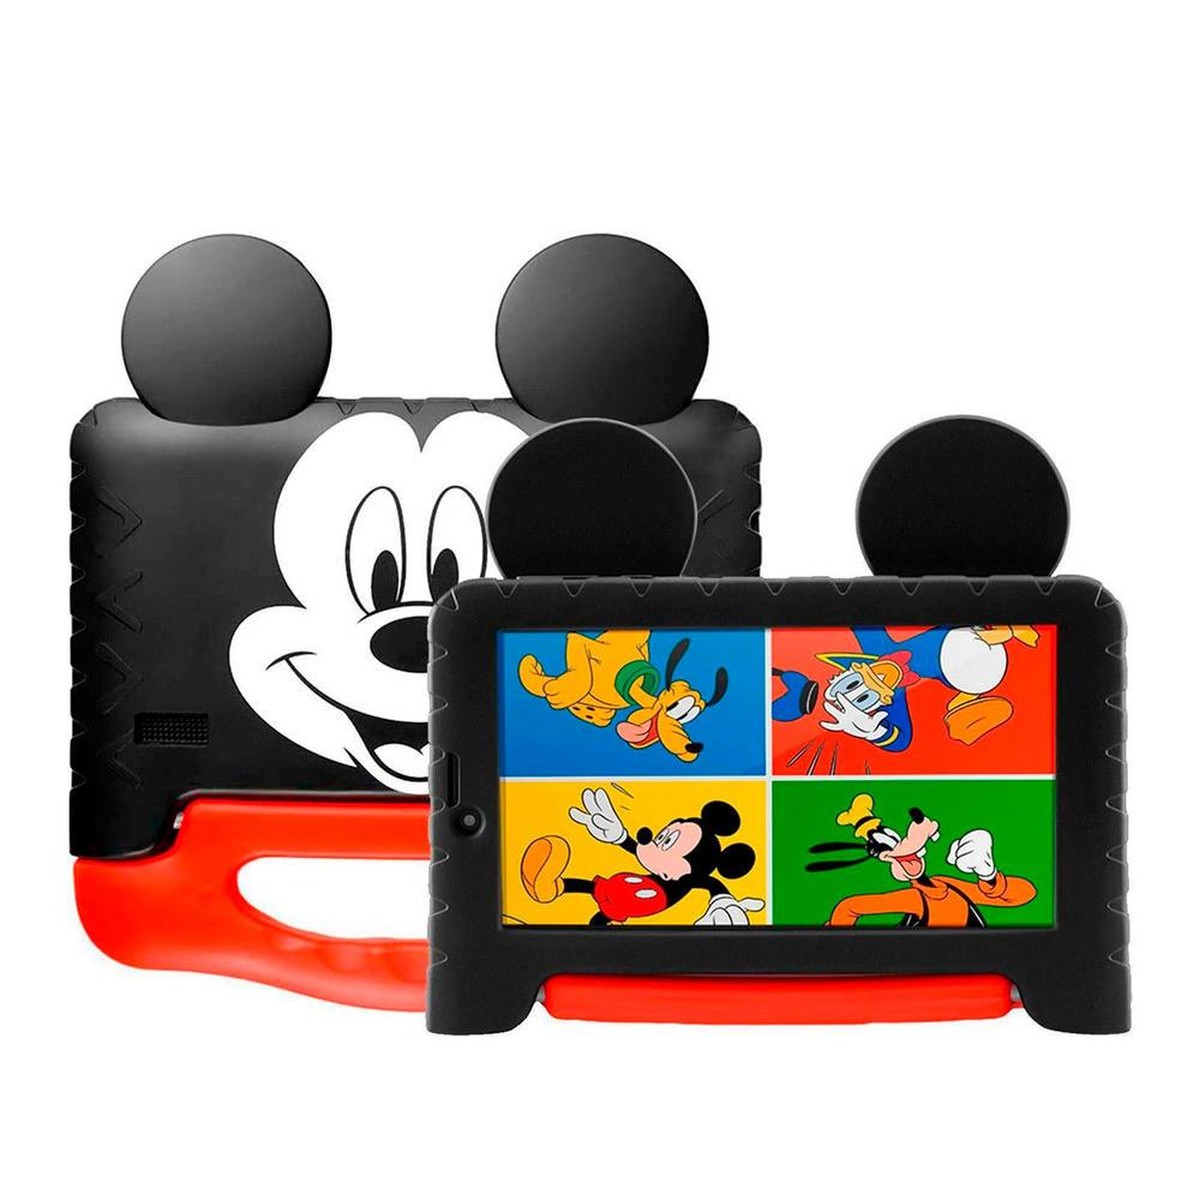 Jogo Da Memória - A Casa Do Mickey Mouse - MP Brinquedos